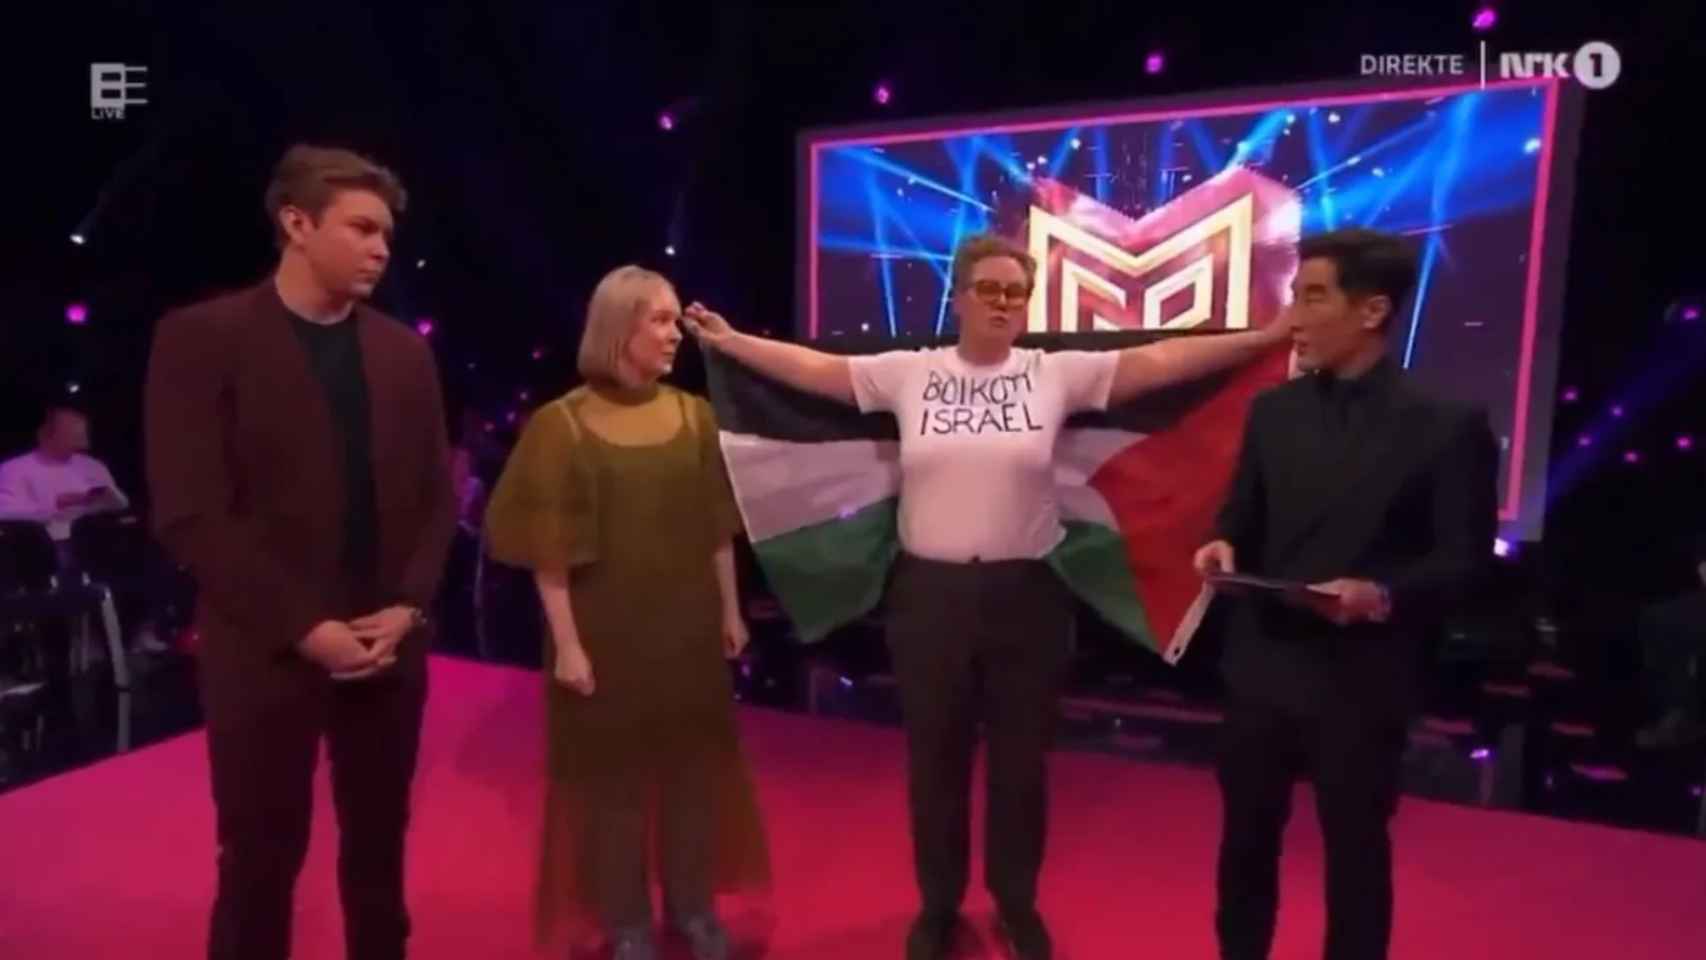 Un manifestante enarbola una bandera palestina en las semifinales de la preselección noruega.